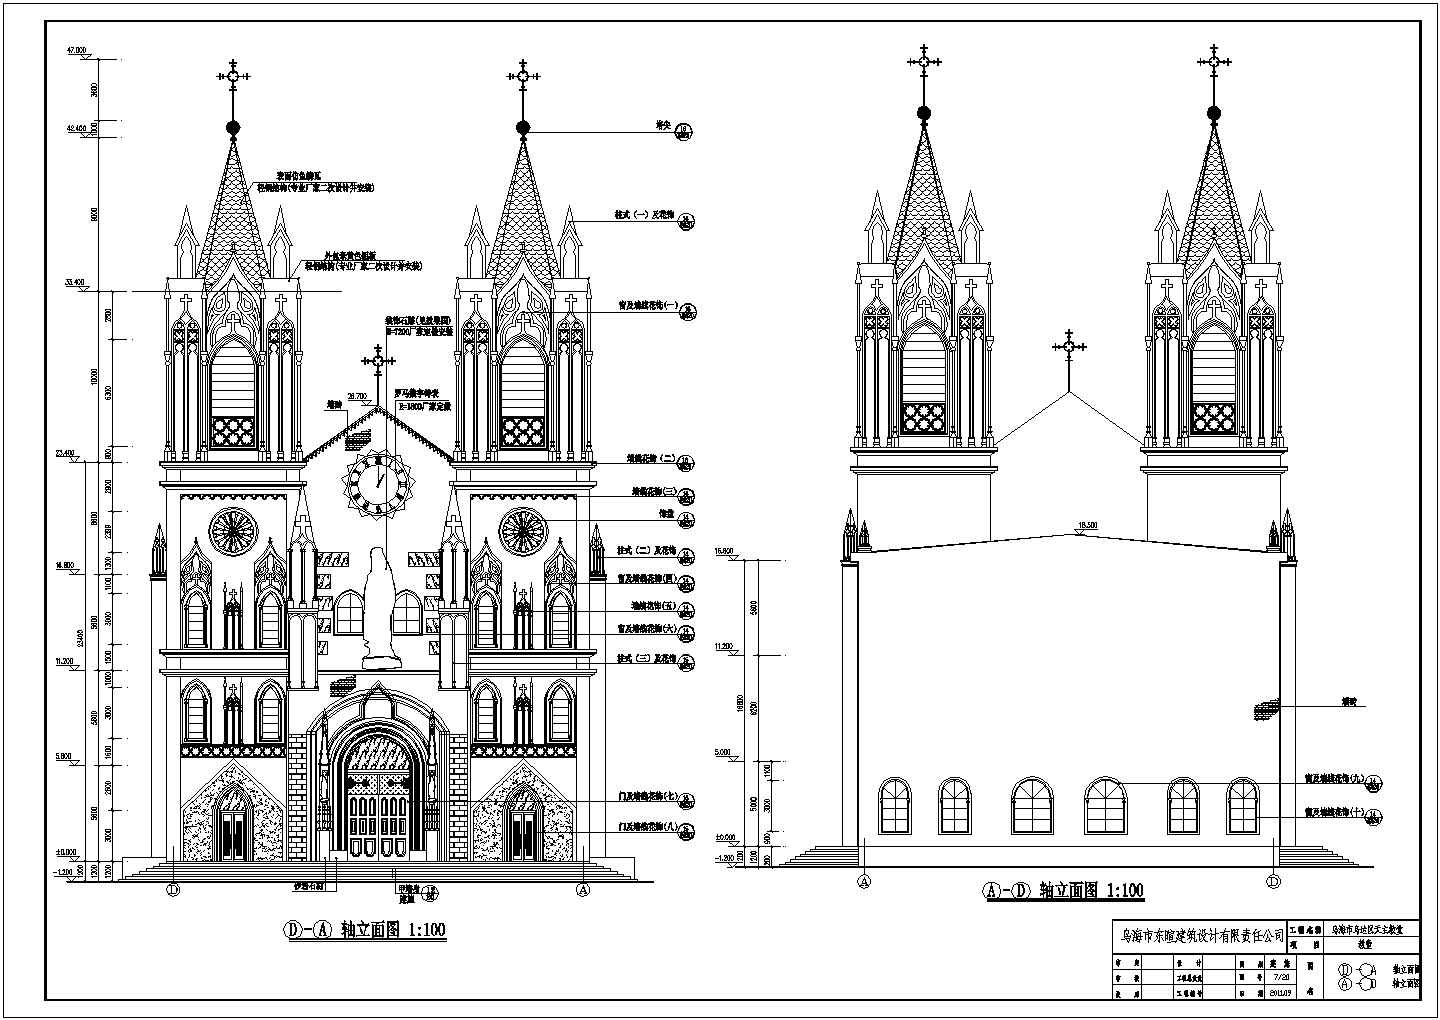 乌海市乌达区天主教教堂土建筑施工图